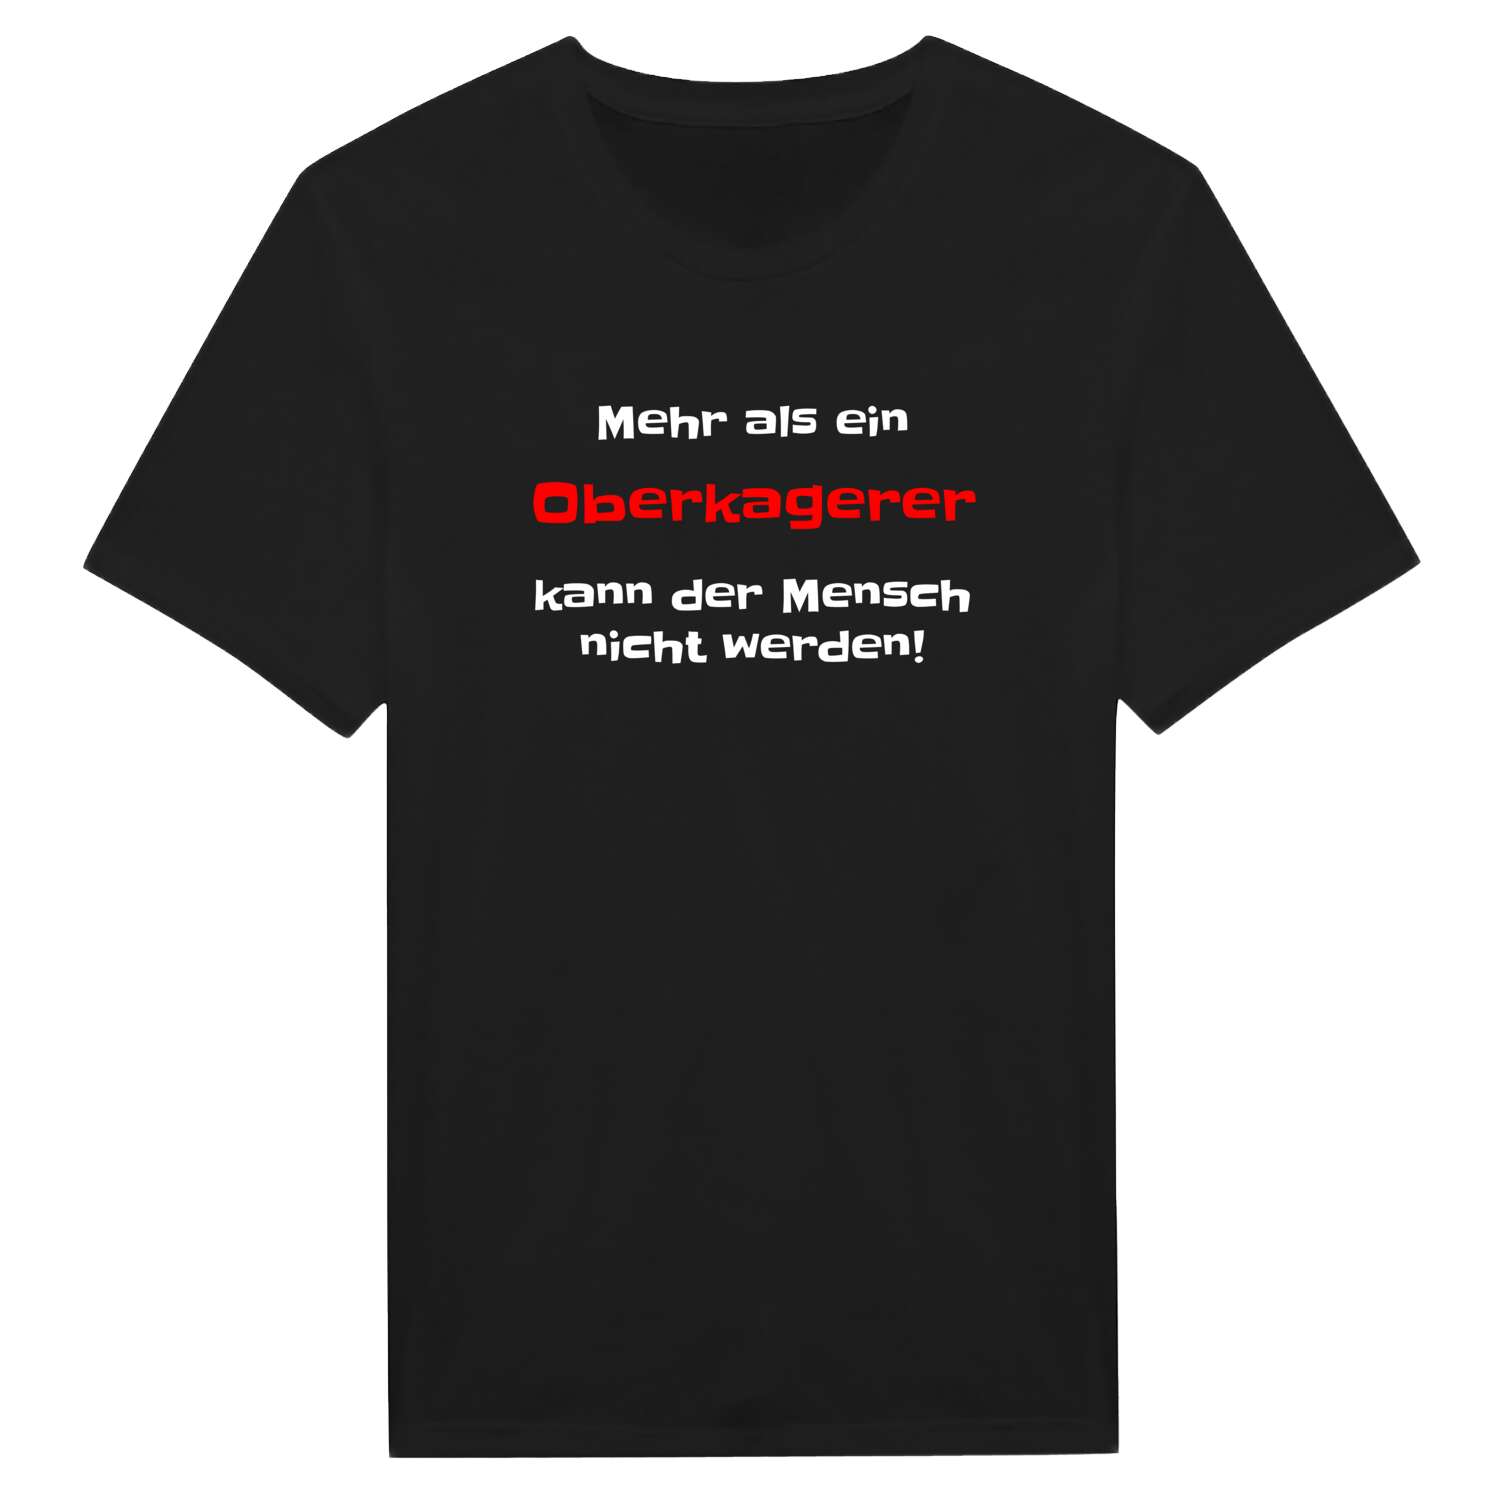 Oberkager T-Shirt »Mehr als ein«